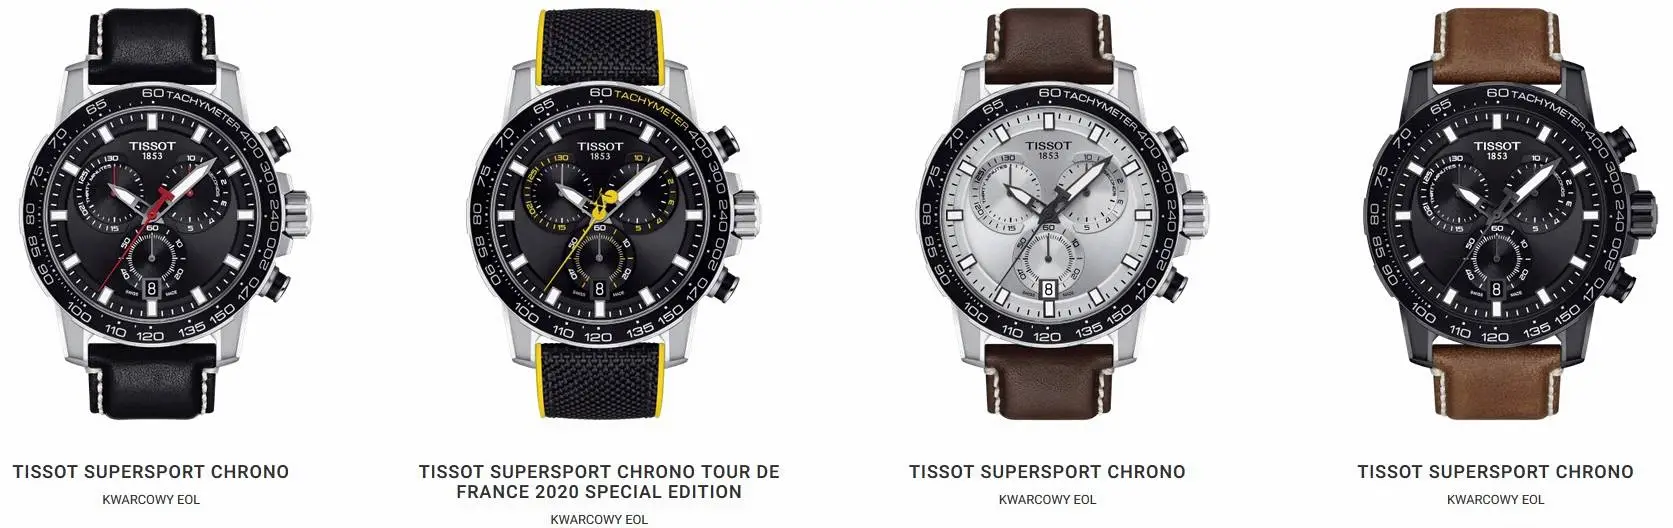 TISSOT Supersport Chrono i Chrono Tour de France Special Edition